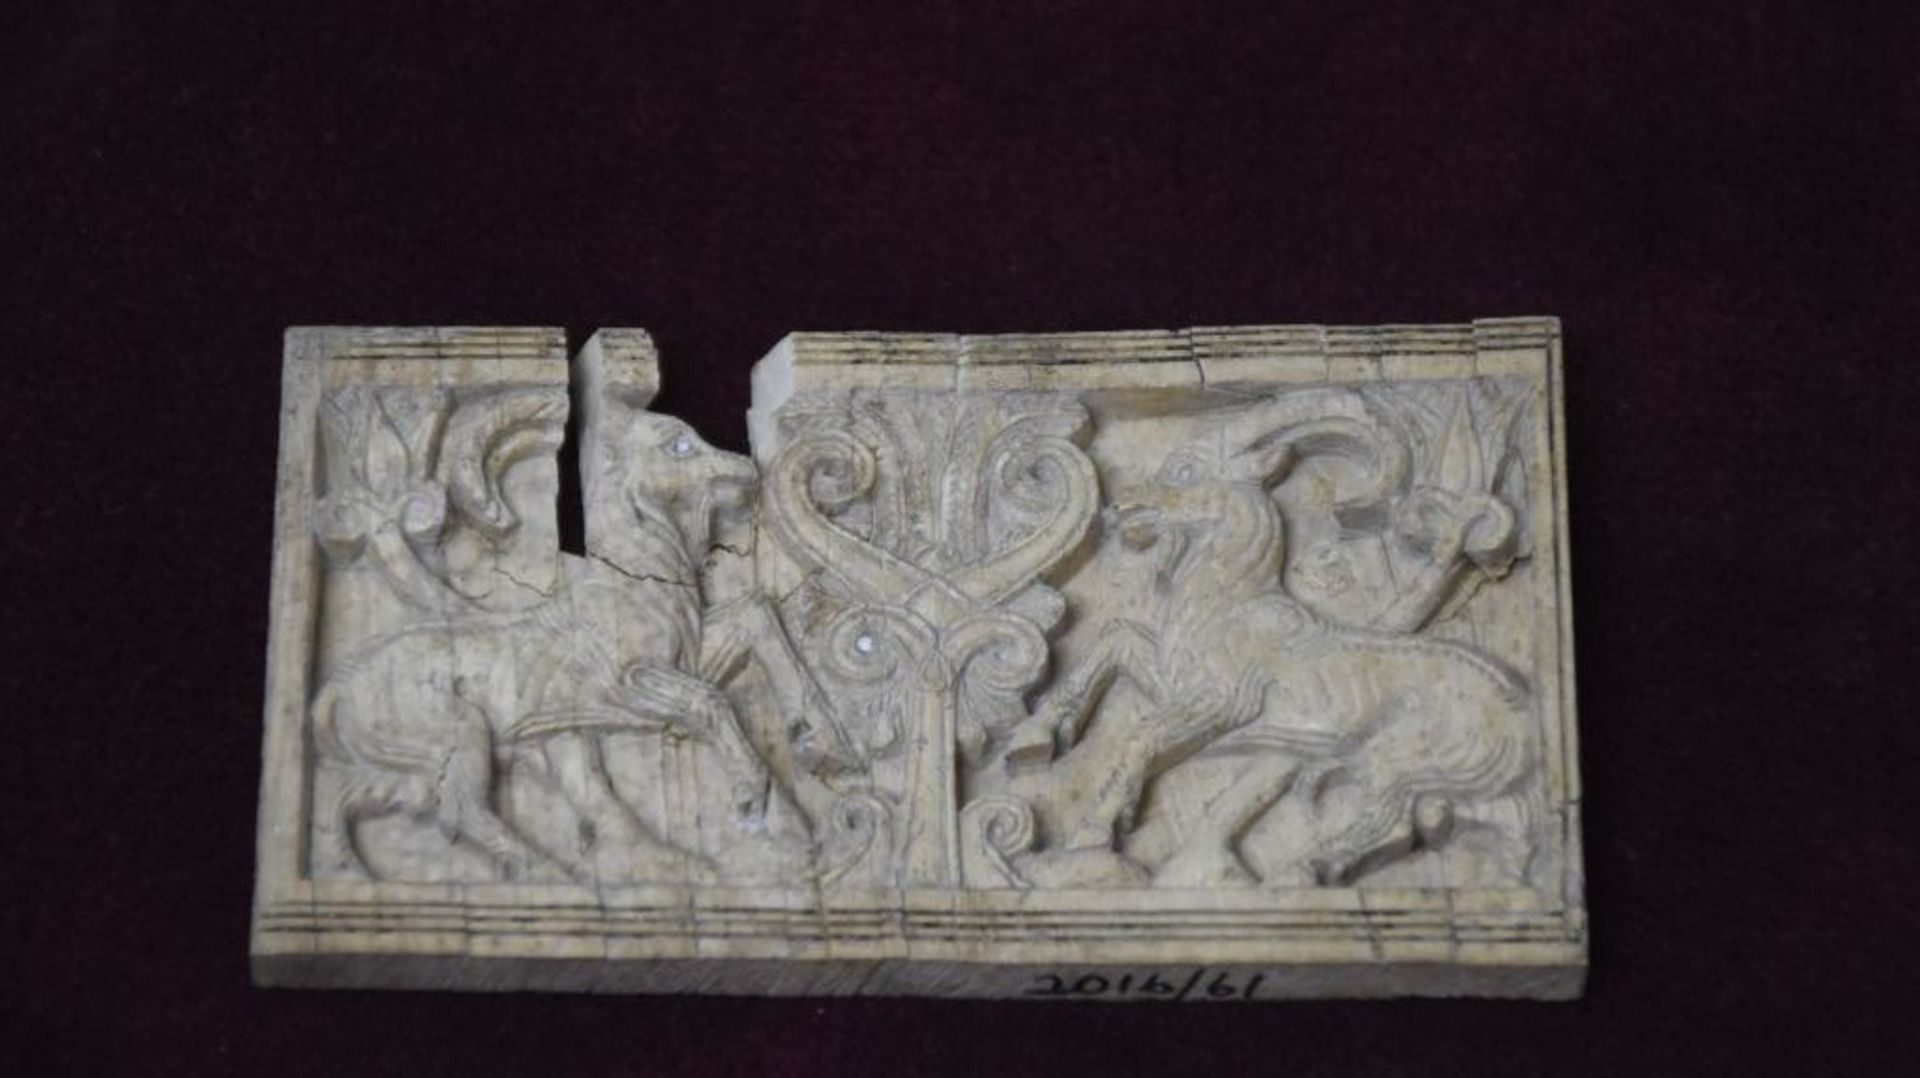 Une sculpture en relief de défense de 3200 ans représentant des chèvres avec des figures de parure assyriennes du début de la période hittite est exposée après avoir été fondée lors de fouilles archéologiques sur le site archéologique d'Arslantepe à Malat